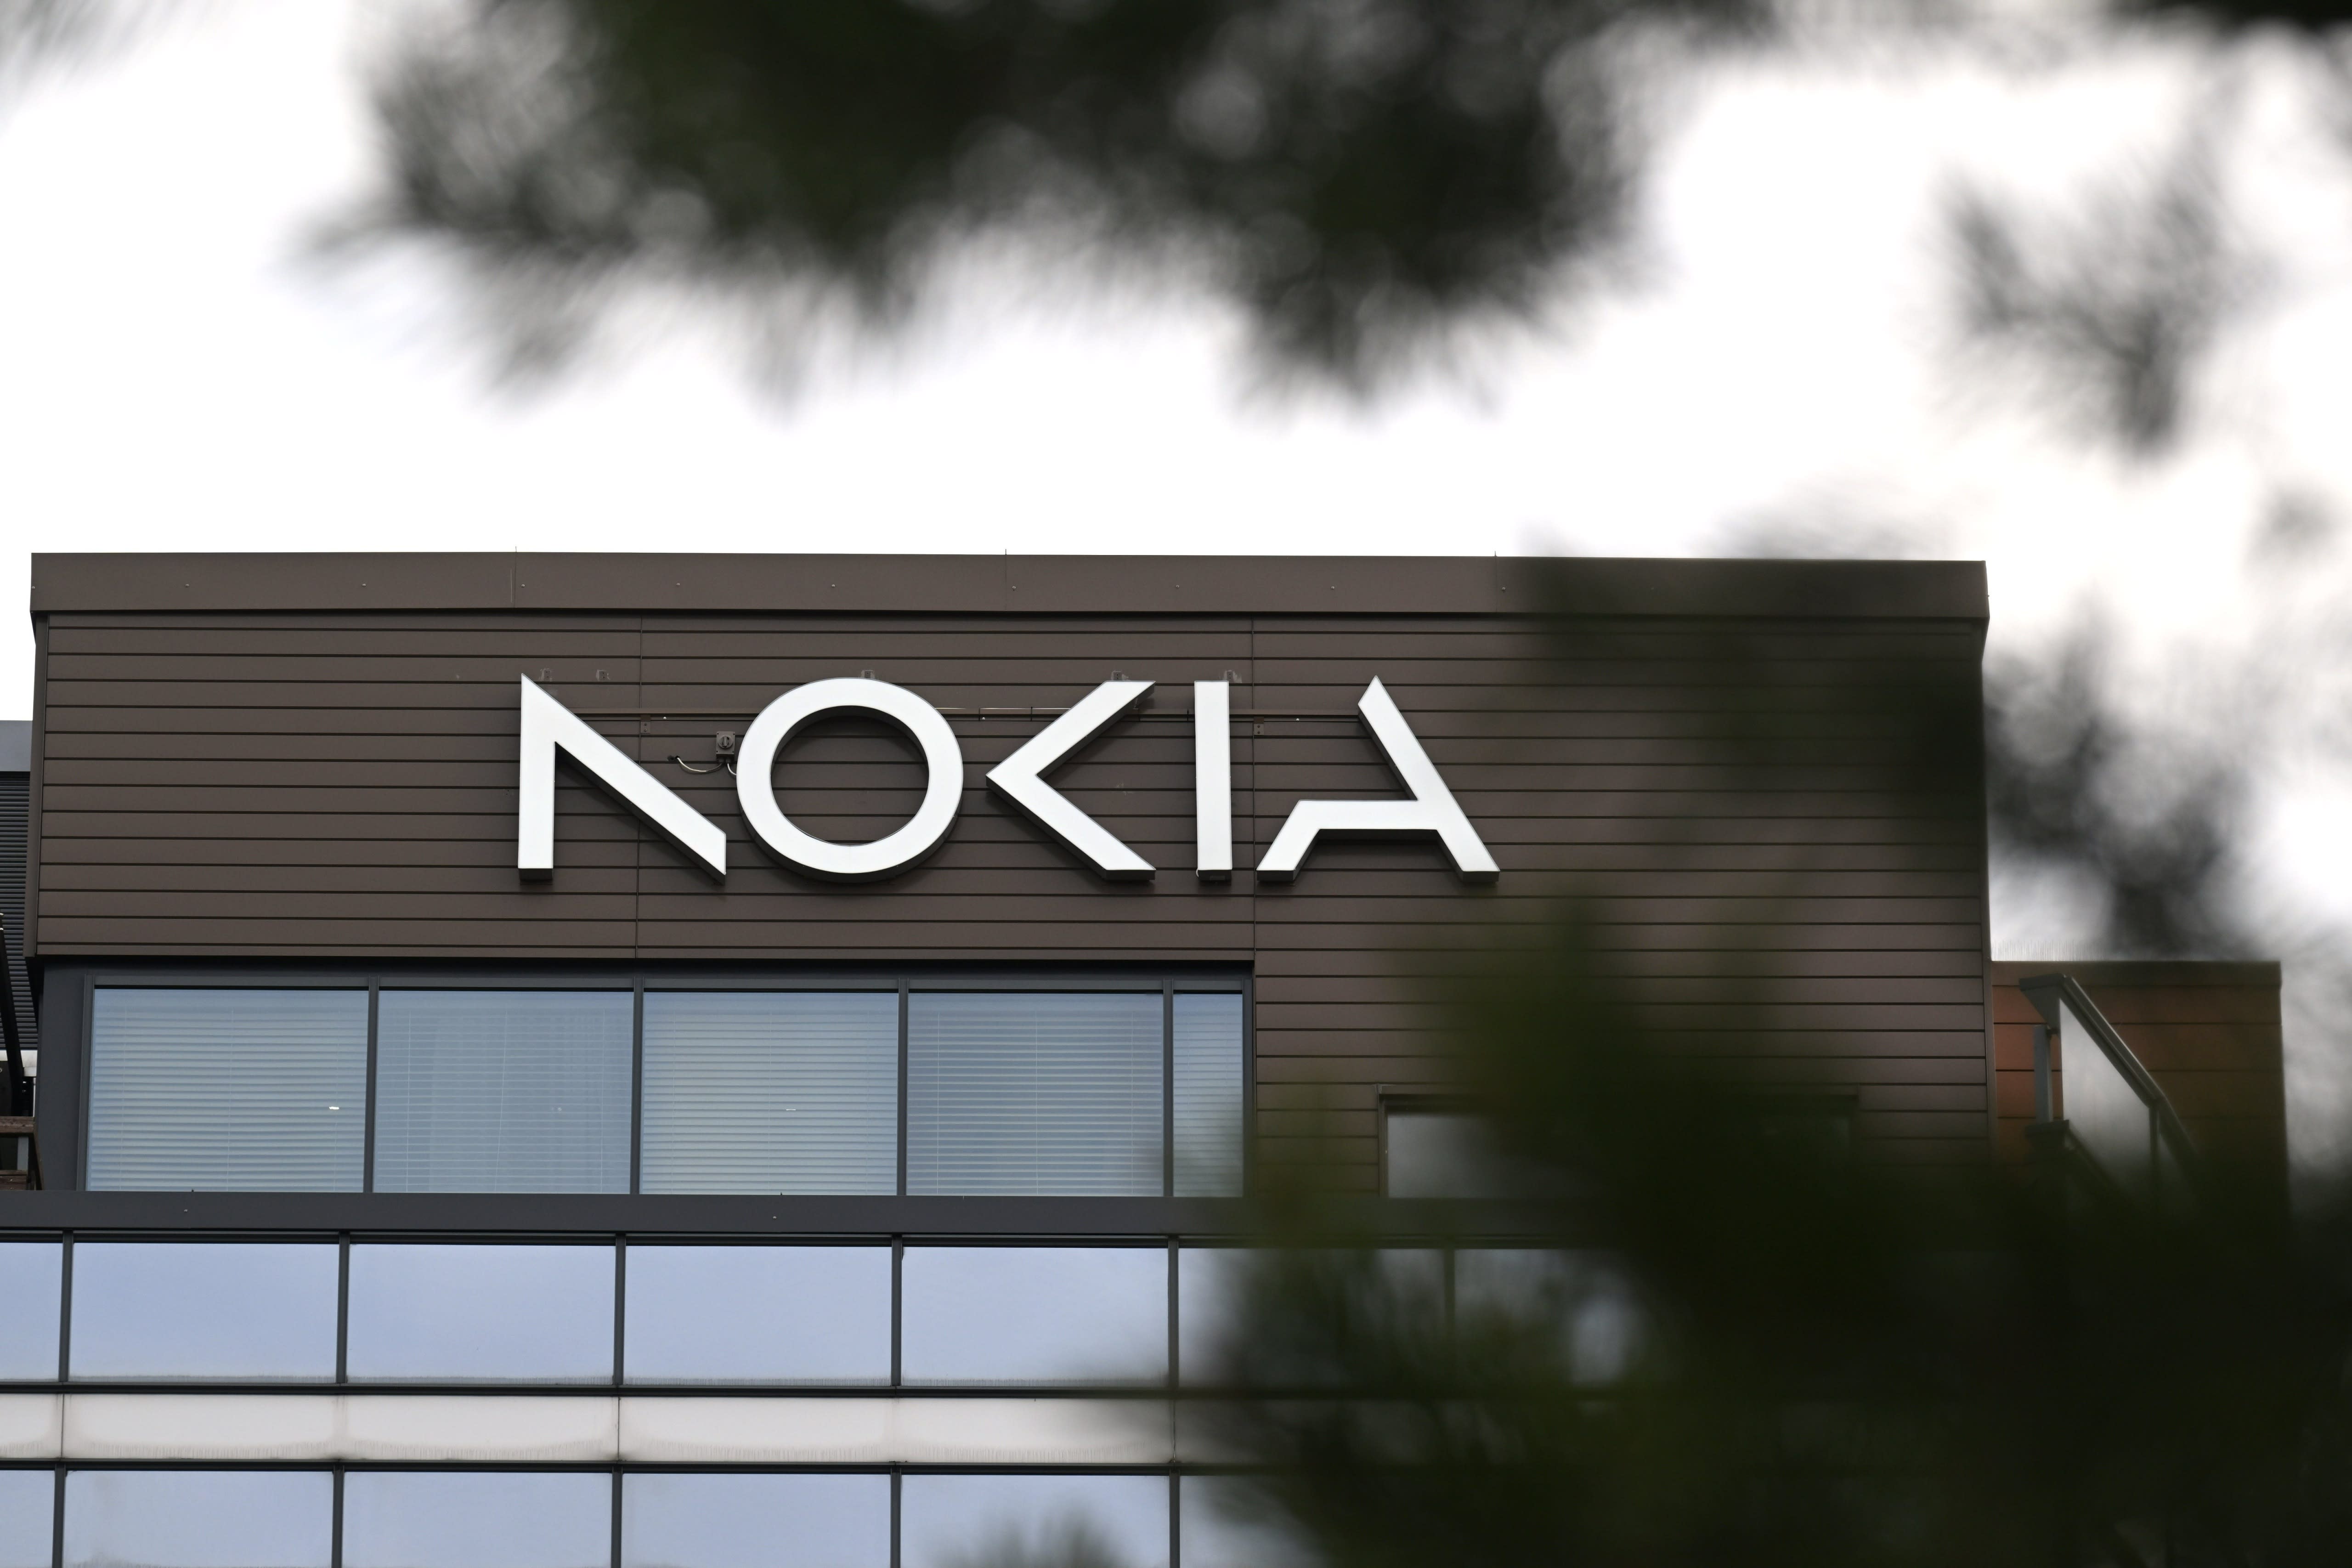 Nokia beginnt mit Entlassungsverhandlungen für mehr als 200 Mitarbeiter in Finnland